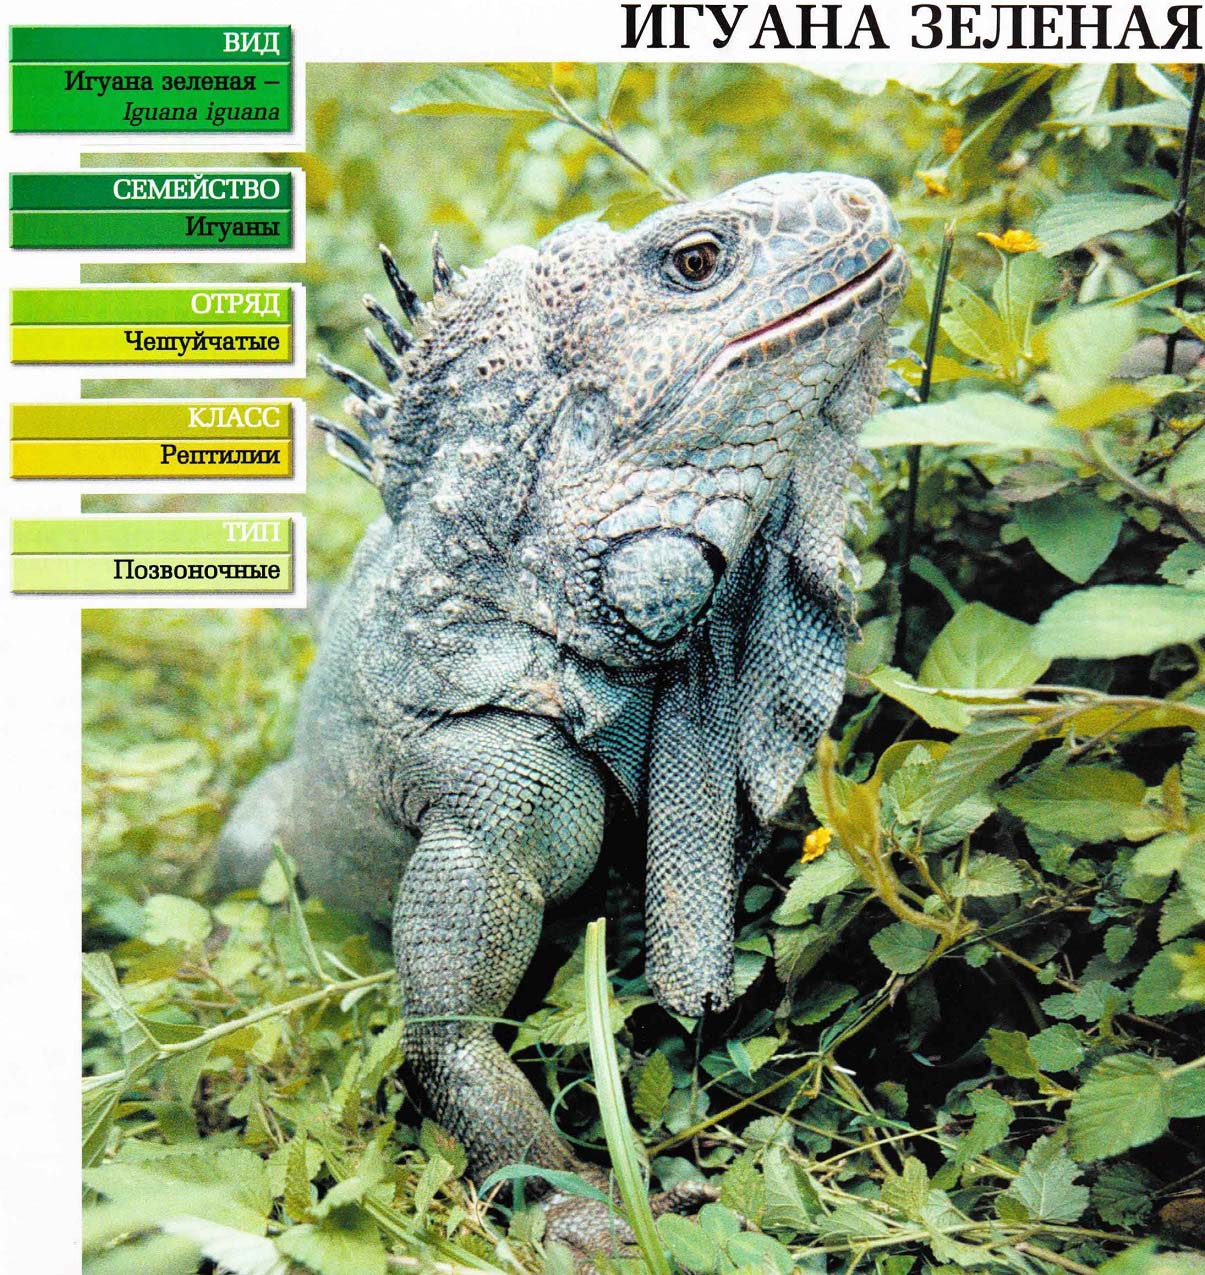 Систематика (научная классификация) игуаны зелёной. Iguana iguana.